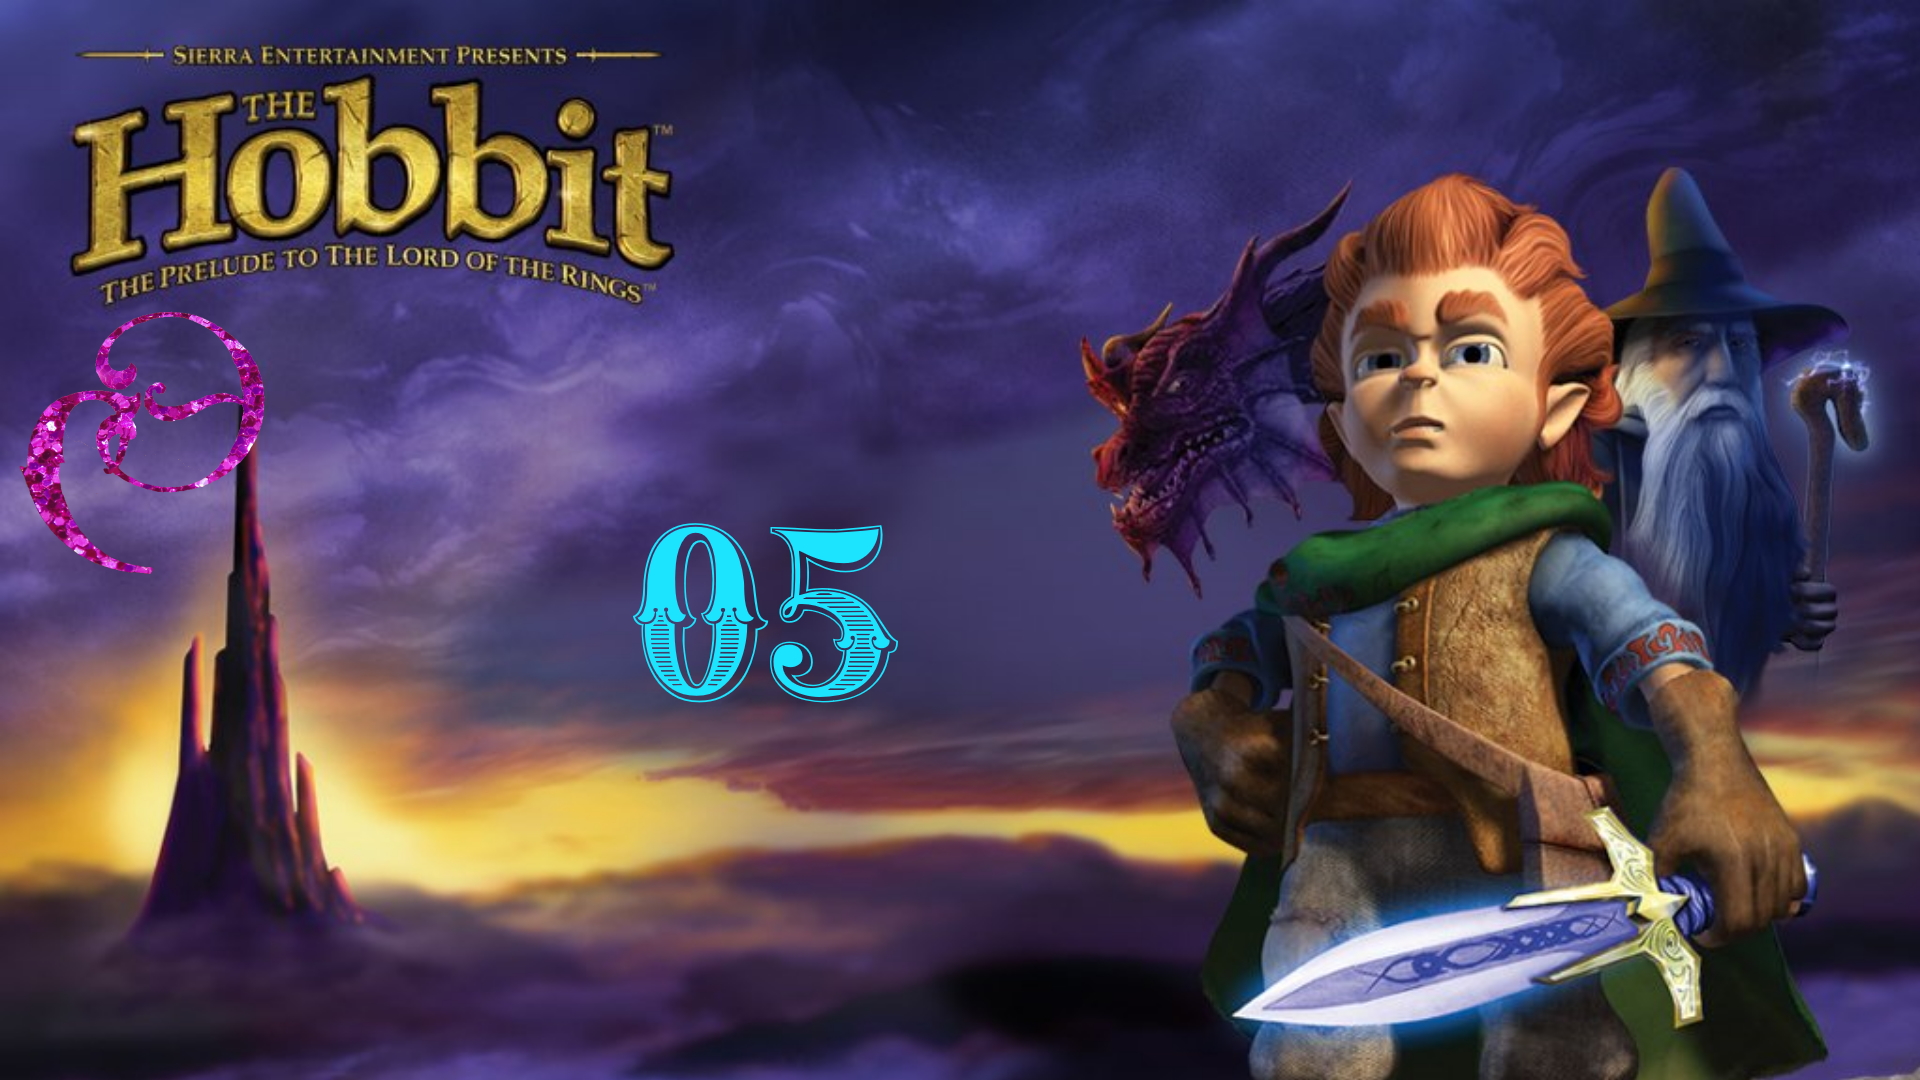 The Hobbit / Хоббит ПРОХОЖДЕНИЕ #Глава 05, часть 1 ? ЗАГАДКИ В ТЕМНОТЕ (1) [русская озвучка]